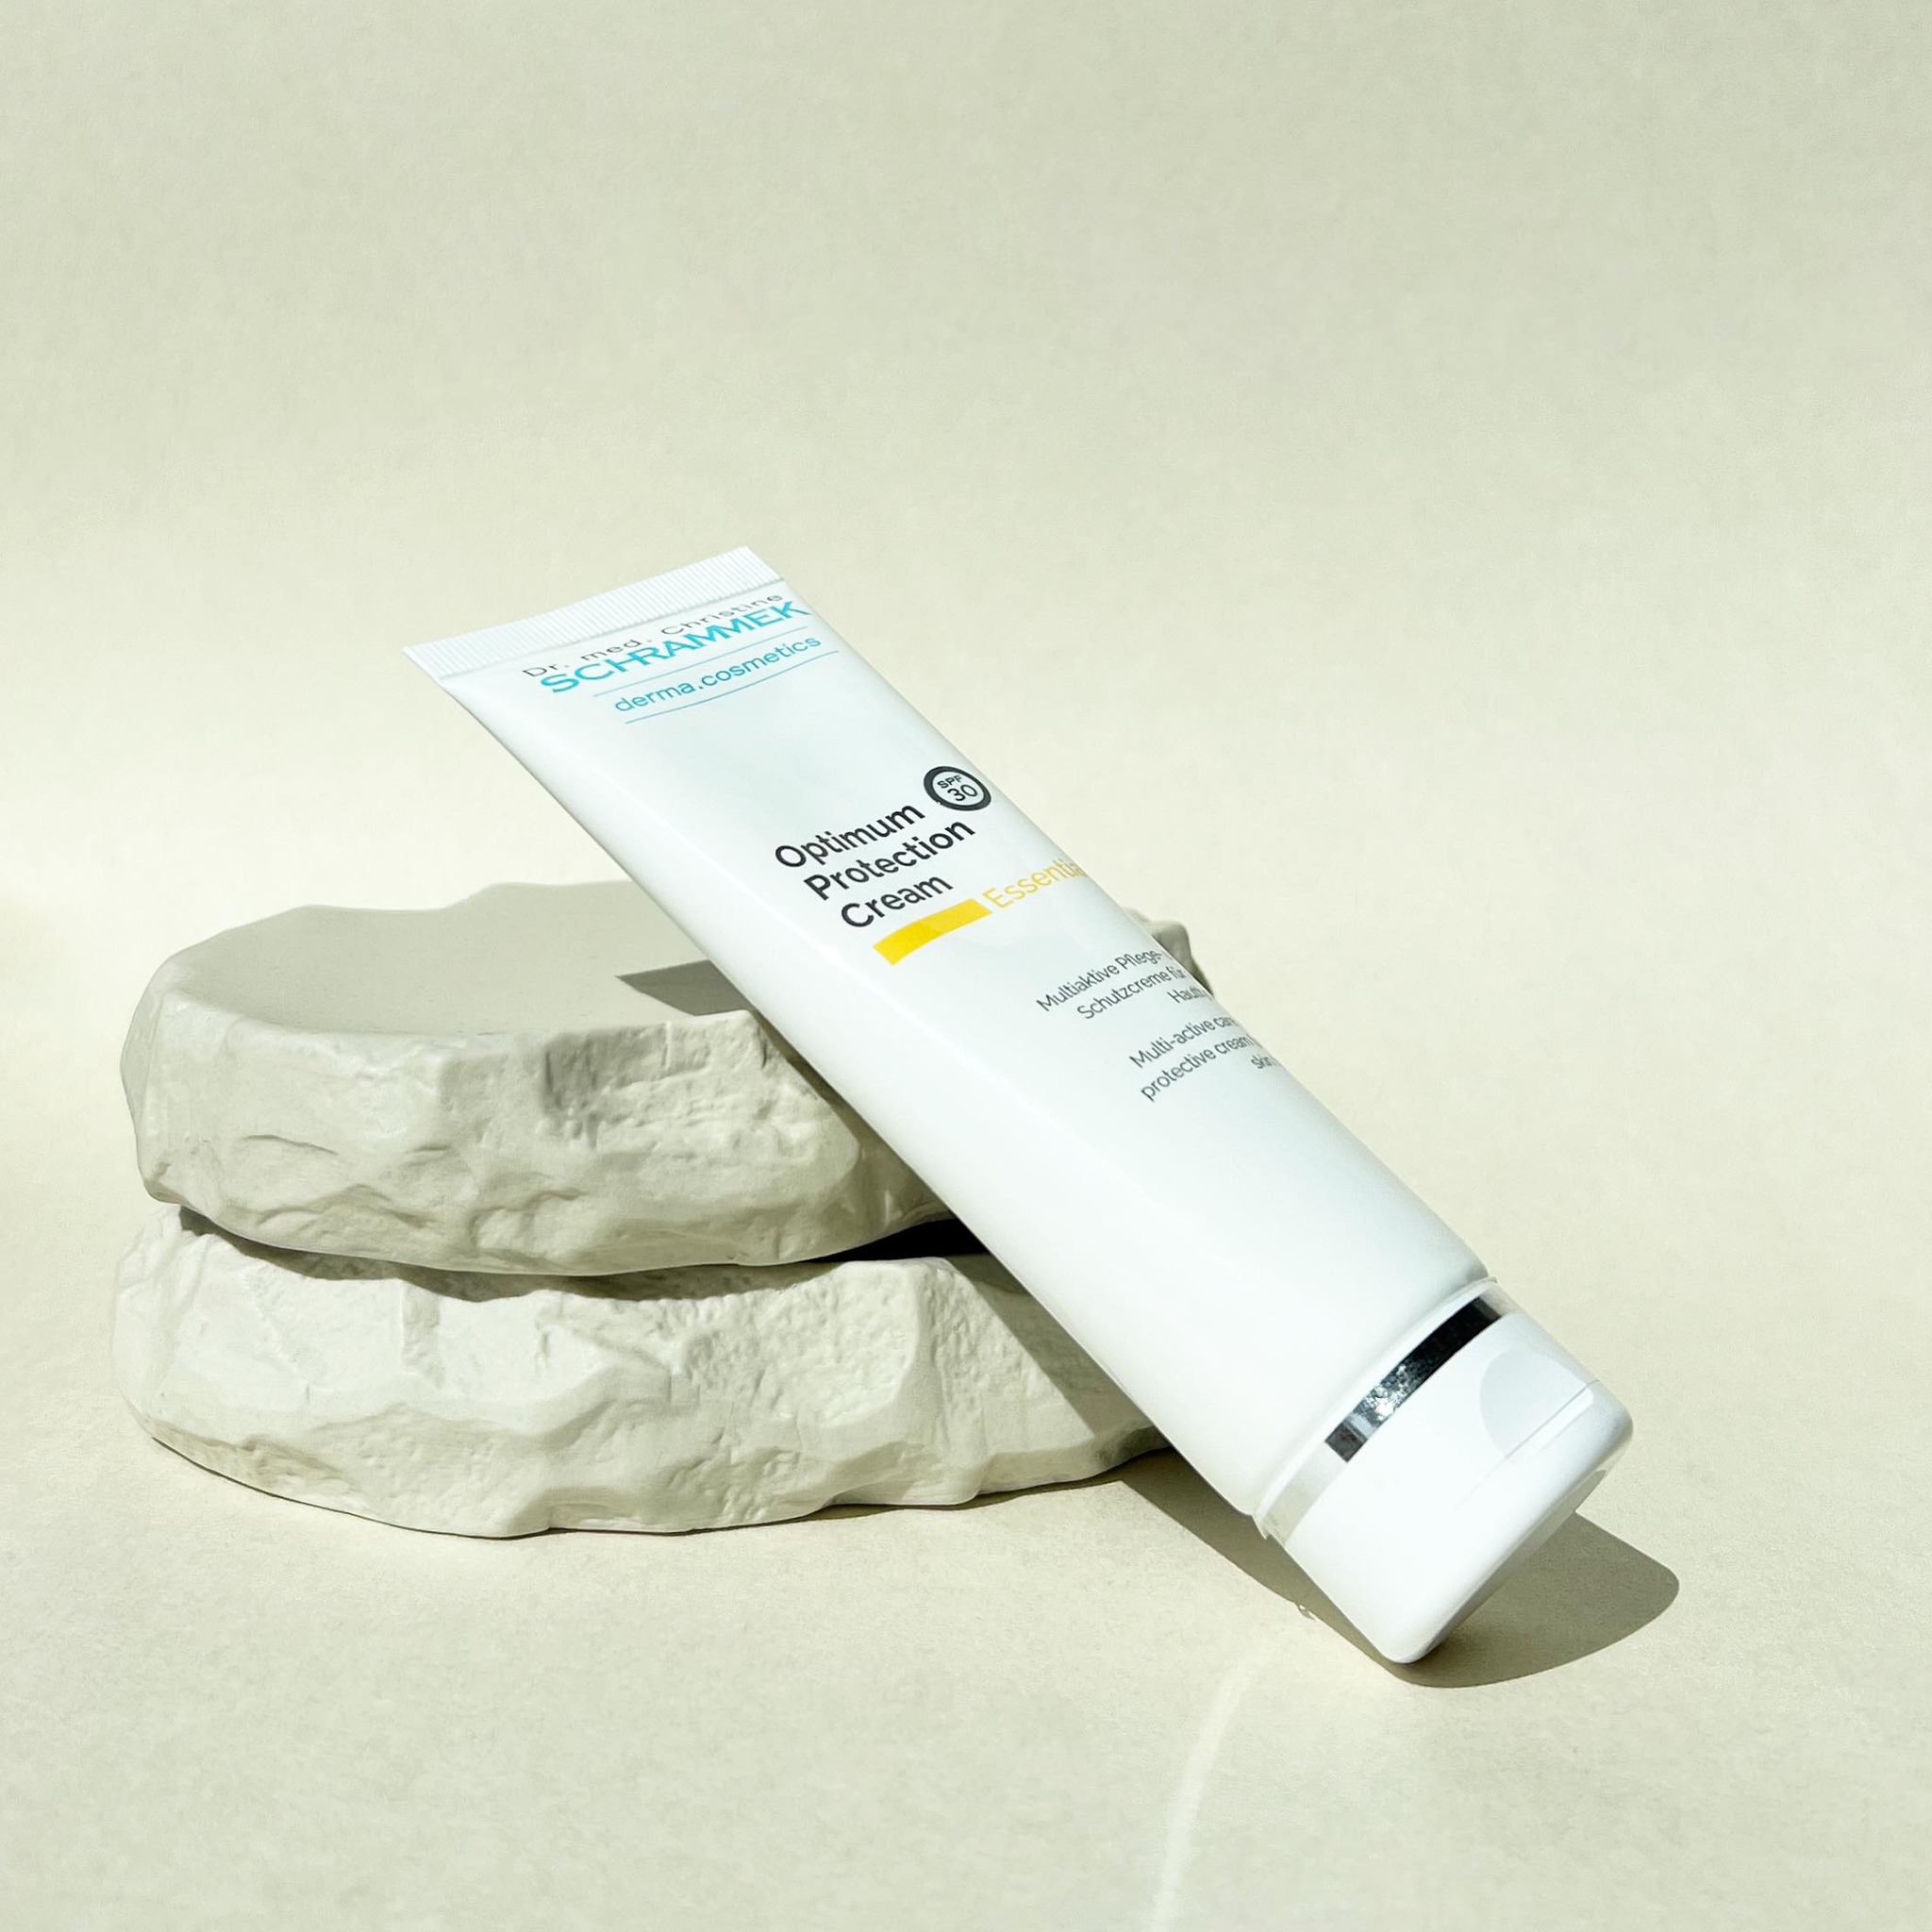 Make SPF your BFF🌞🏻

Optimum Protection Cream är uppbyggande dagkräm med SPF 30 som förebygger åldrande hud, inflammationer och rodnad. 

Innehåller en kombination av reparerande, vårdande och skyddande aktiva ämnen som stärker huden mot ljusinducerad påverkan. Tips: Avsluta med Blemish Balm för en sommarhud med lyster🏼